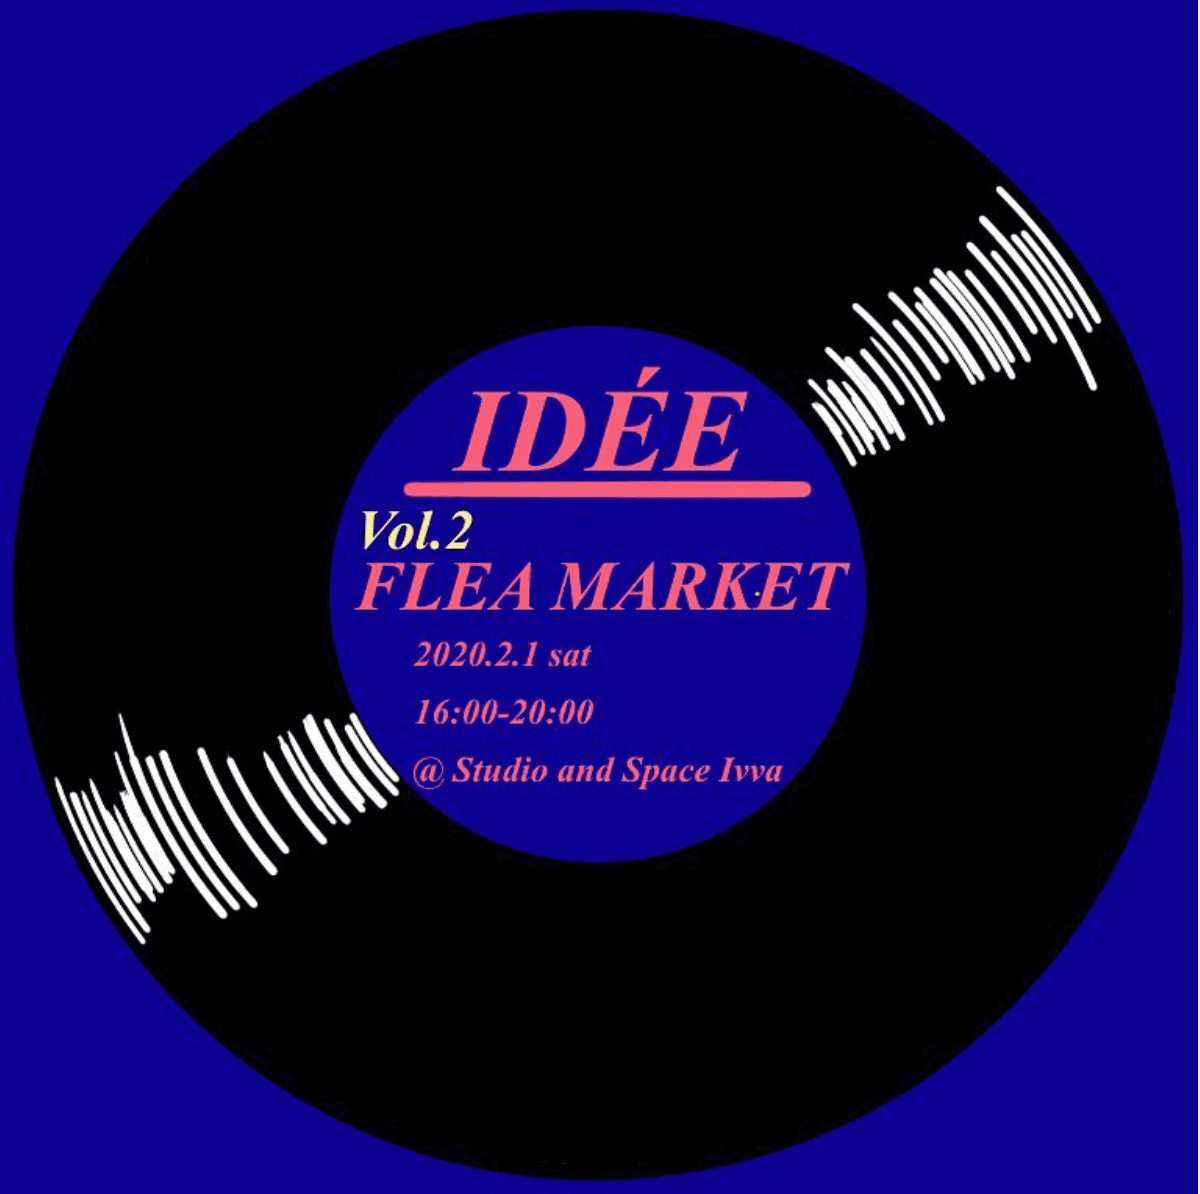 上智大学IDEE Creationが、2020年2月1日に原宿にてフリーマーケットを開催！